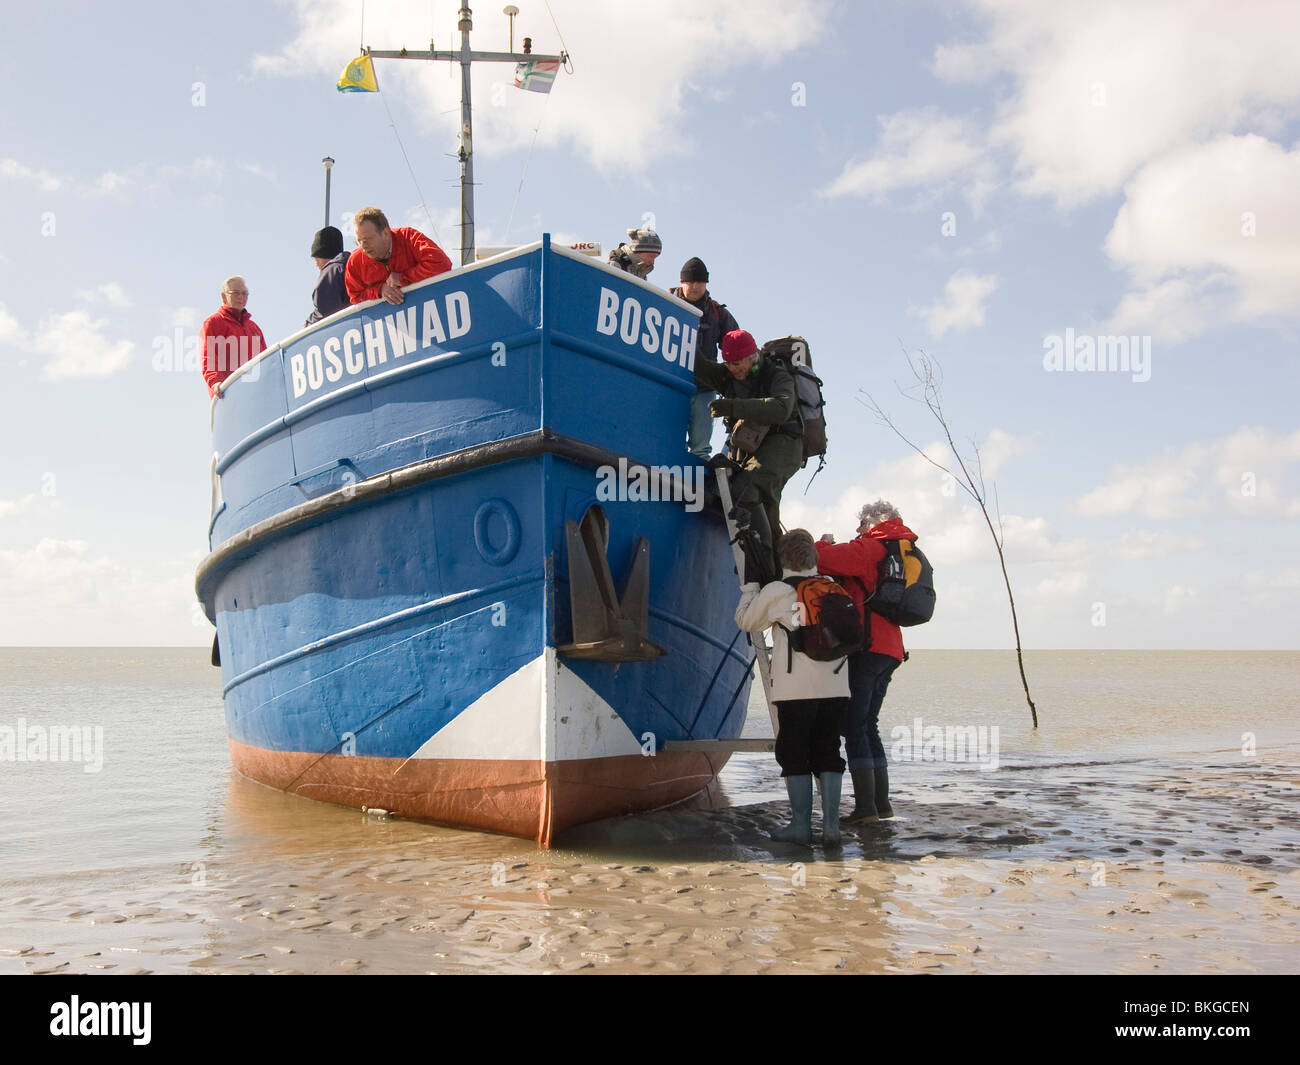 Los participantes de una excursión a Rottumeroog dejar el barco el Boschwad. Foto de stock